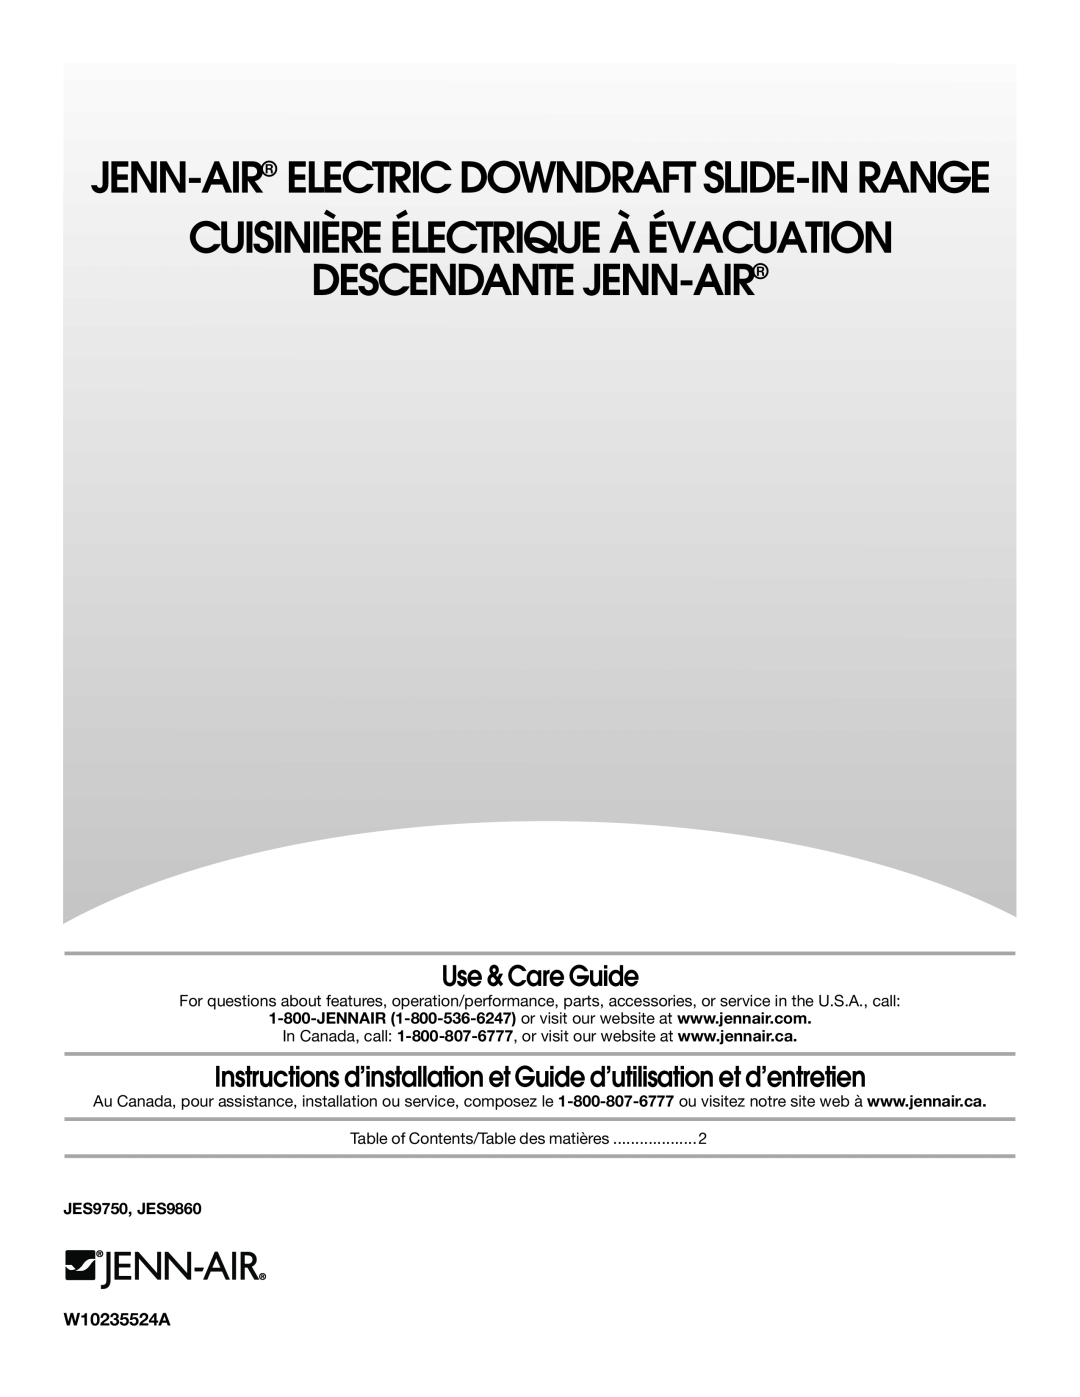 Jenn-Air JES9860 manual Use & Care Guide, Instructions d’installation et Guide d’utilisation et d’entretien, W10235524A 